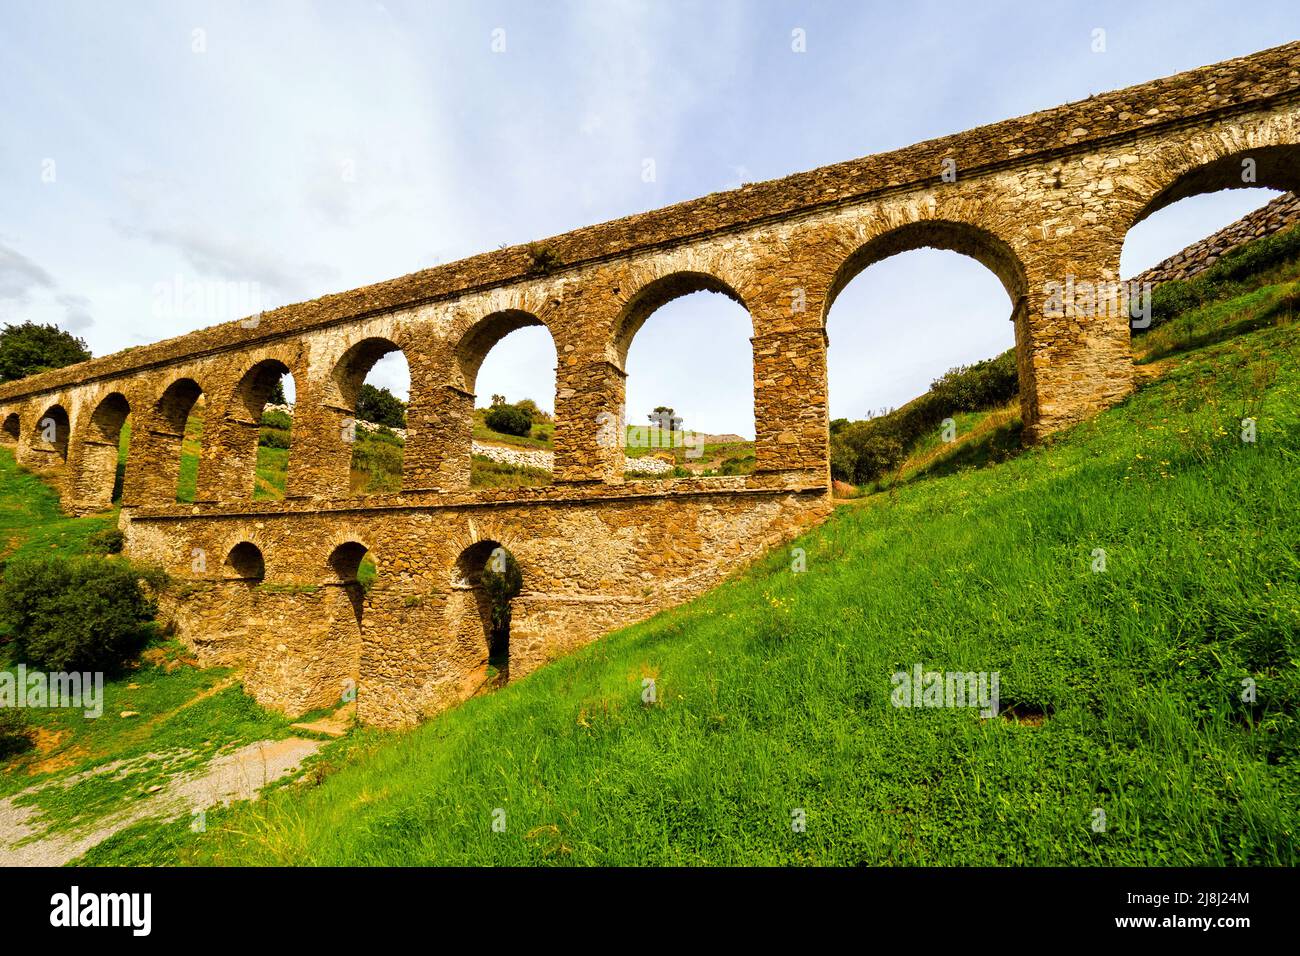 Acquedotto romano costruito nel 1st d.C. vicino ad Almunecar - Granada, Spagna Foto Stock